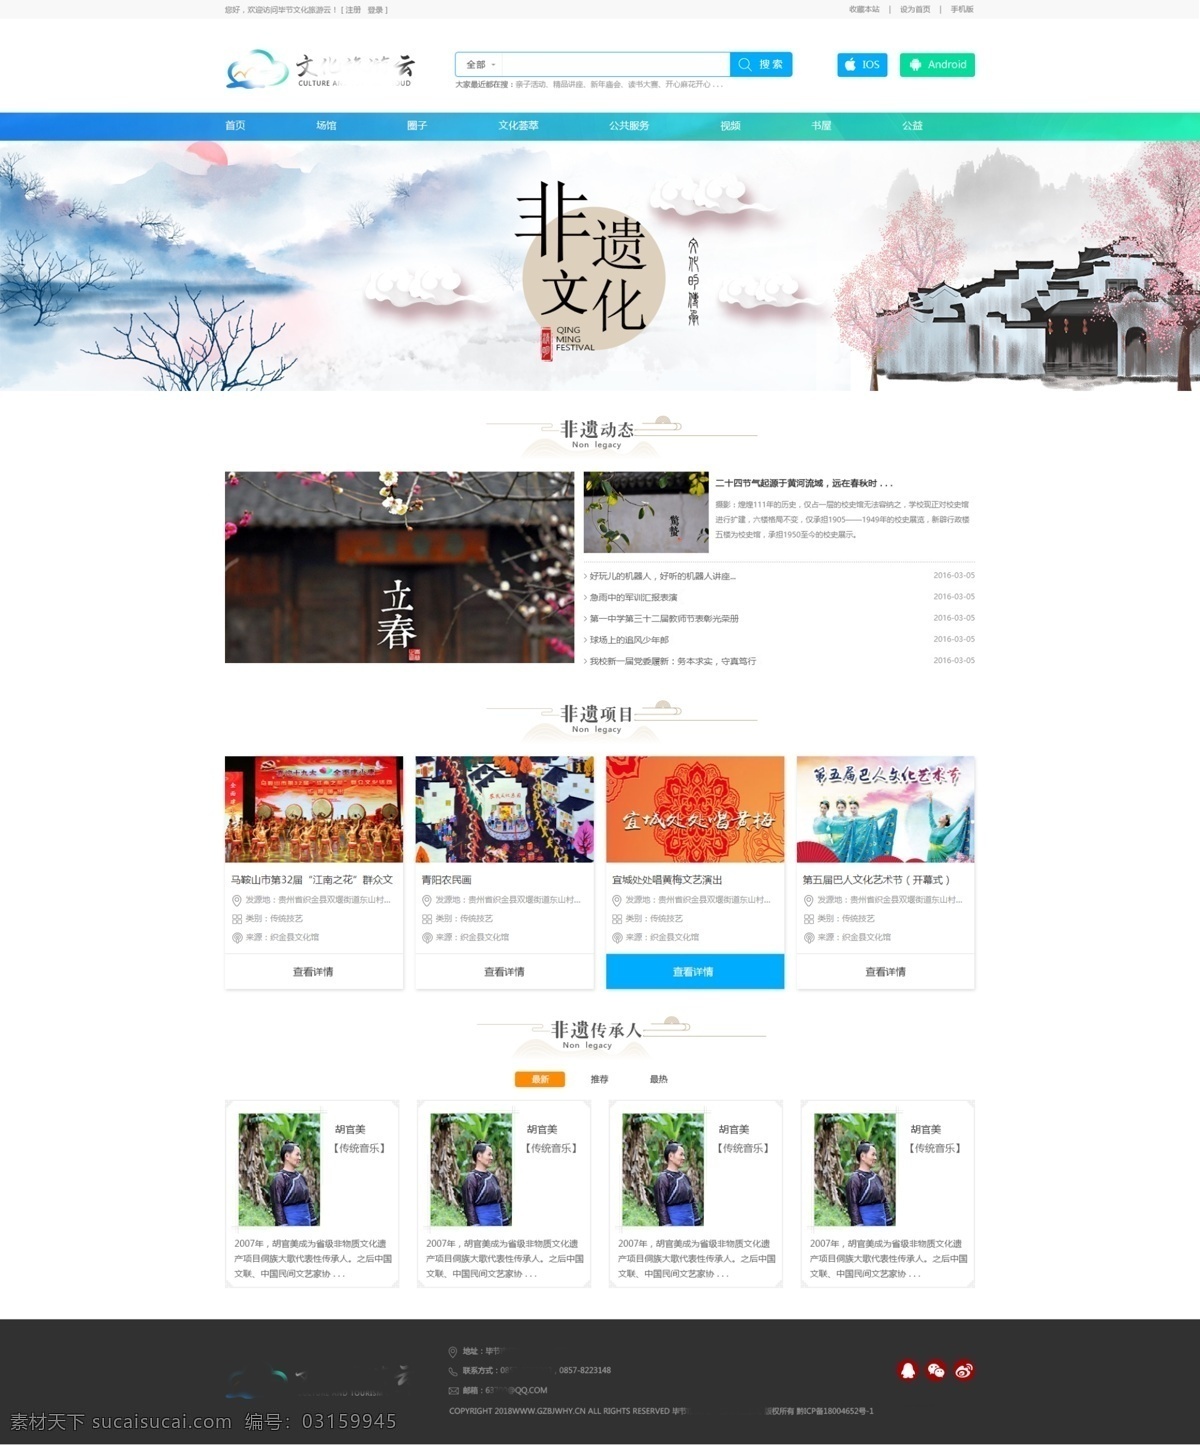 文化网站 背景 毕节 网站 pc 电脑端 web 界面 文化 界面设计 中文模板